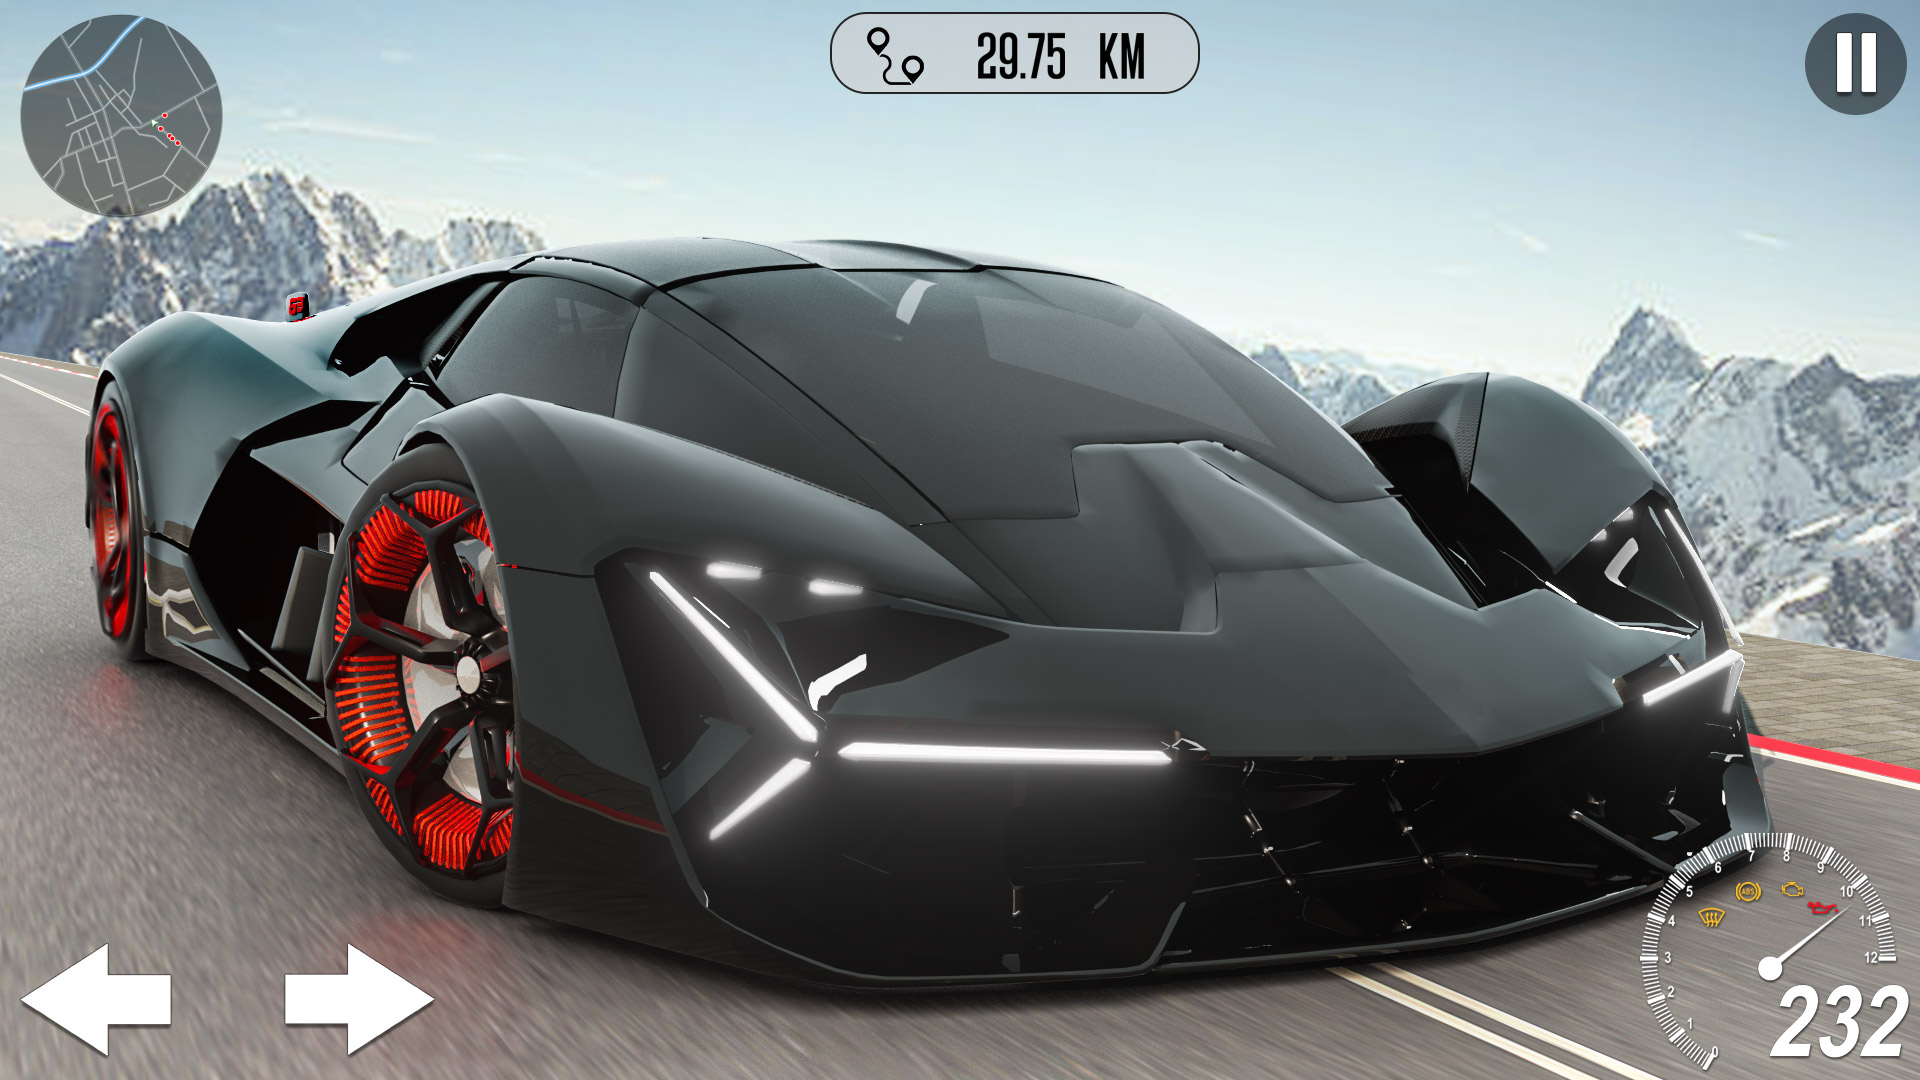  Lamborghini Terzo Millennio in Asphalt 9: Legends